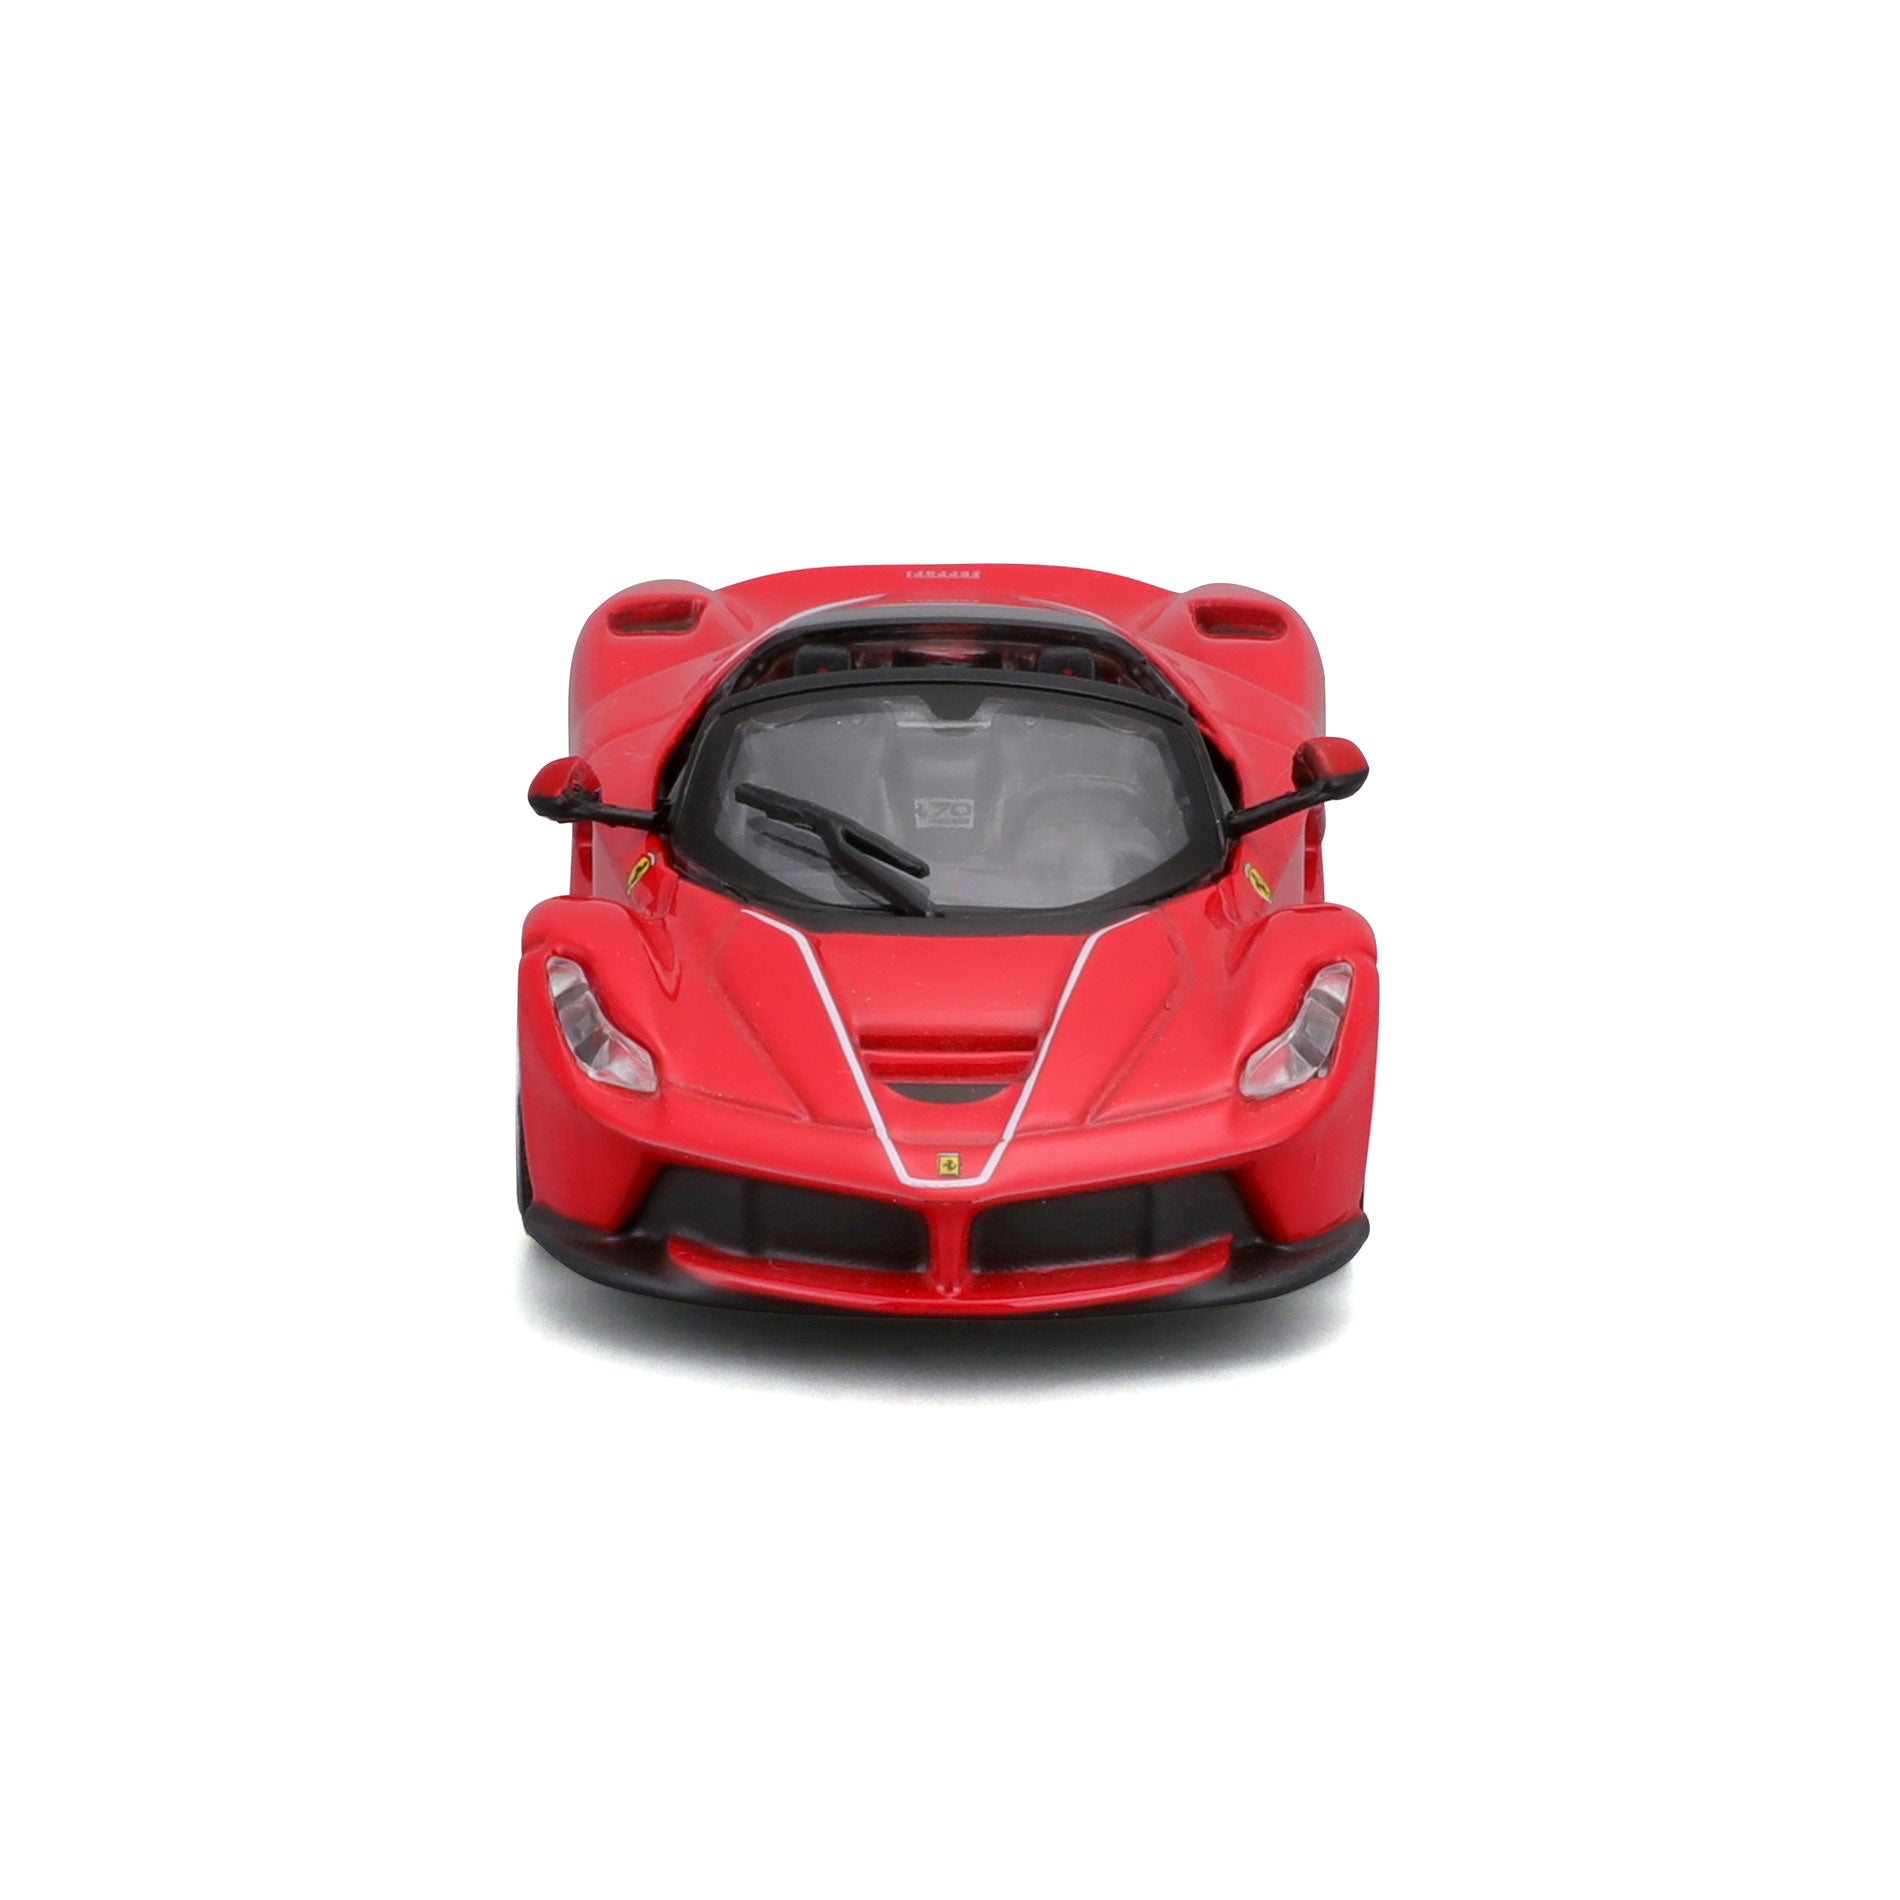 18-36907 RD - Bburago - 1:43 - Ferrari  Signature - LaFerrari  Aperta - Rossa